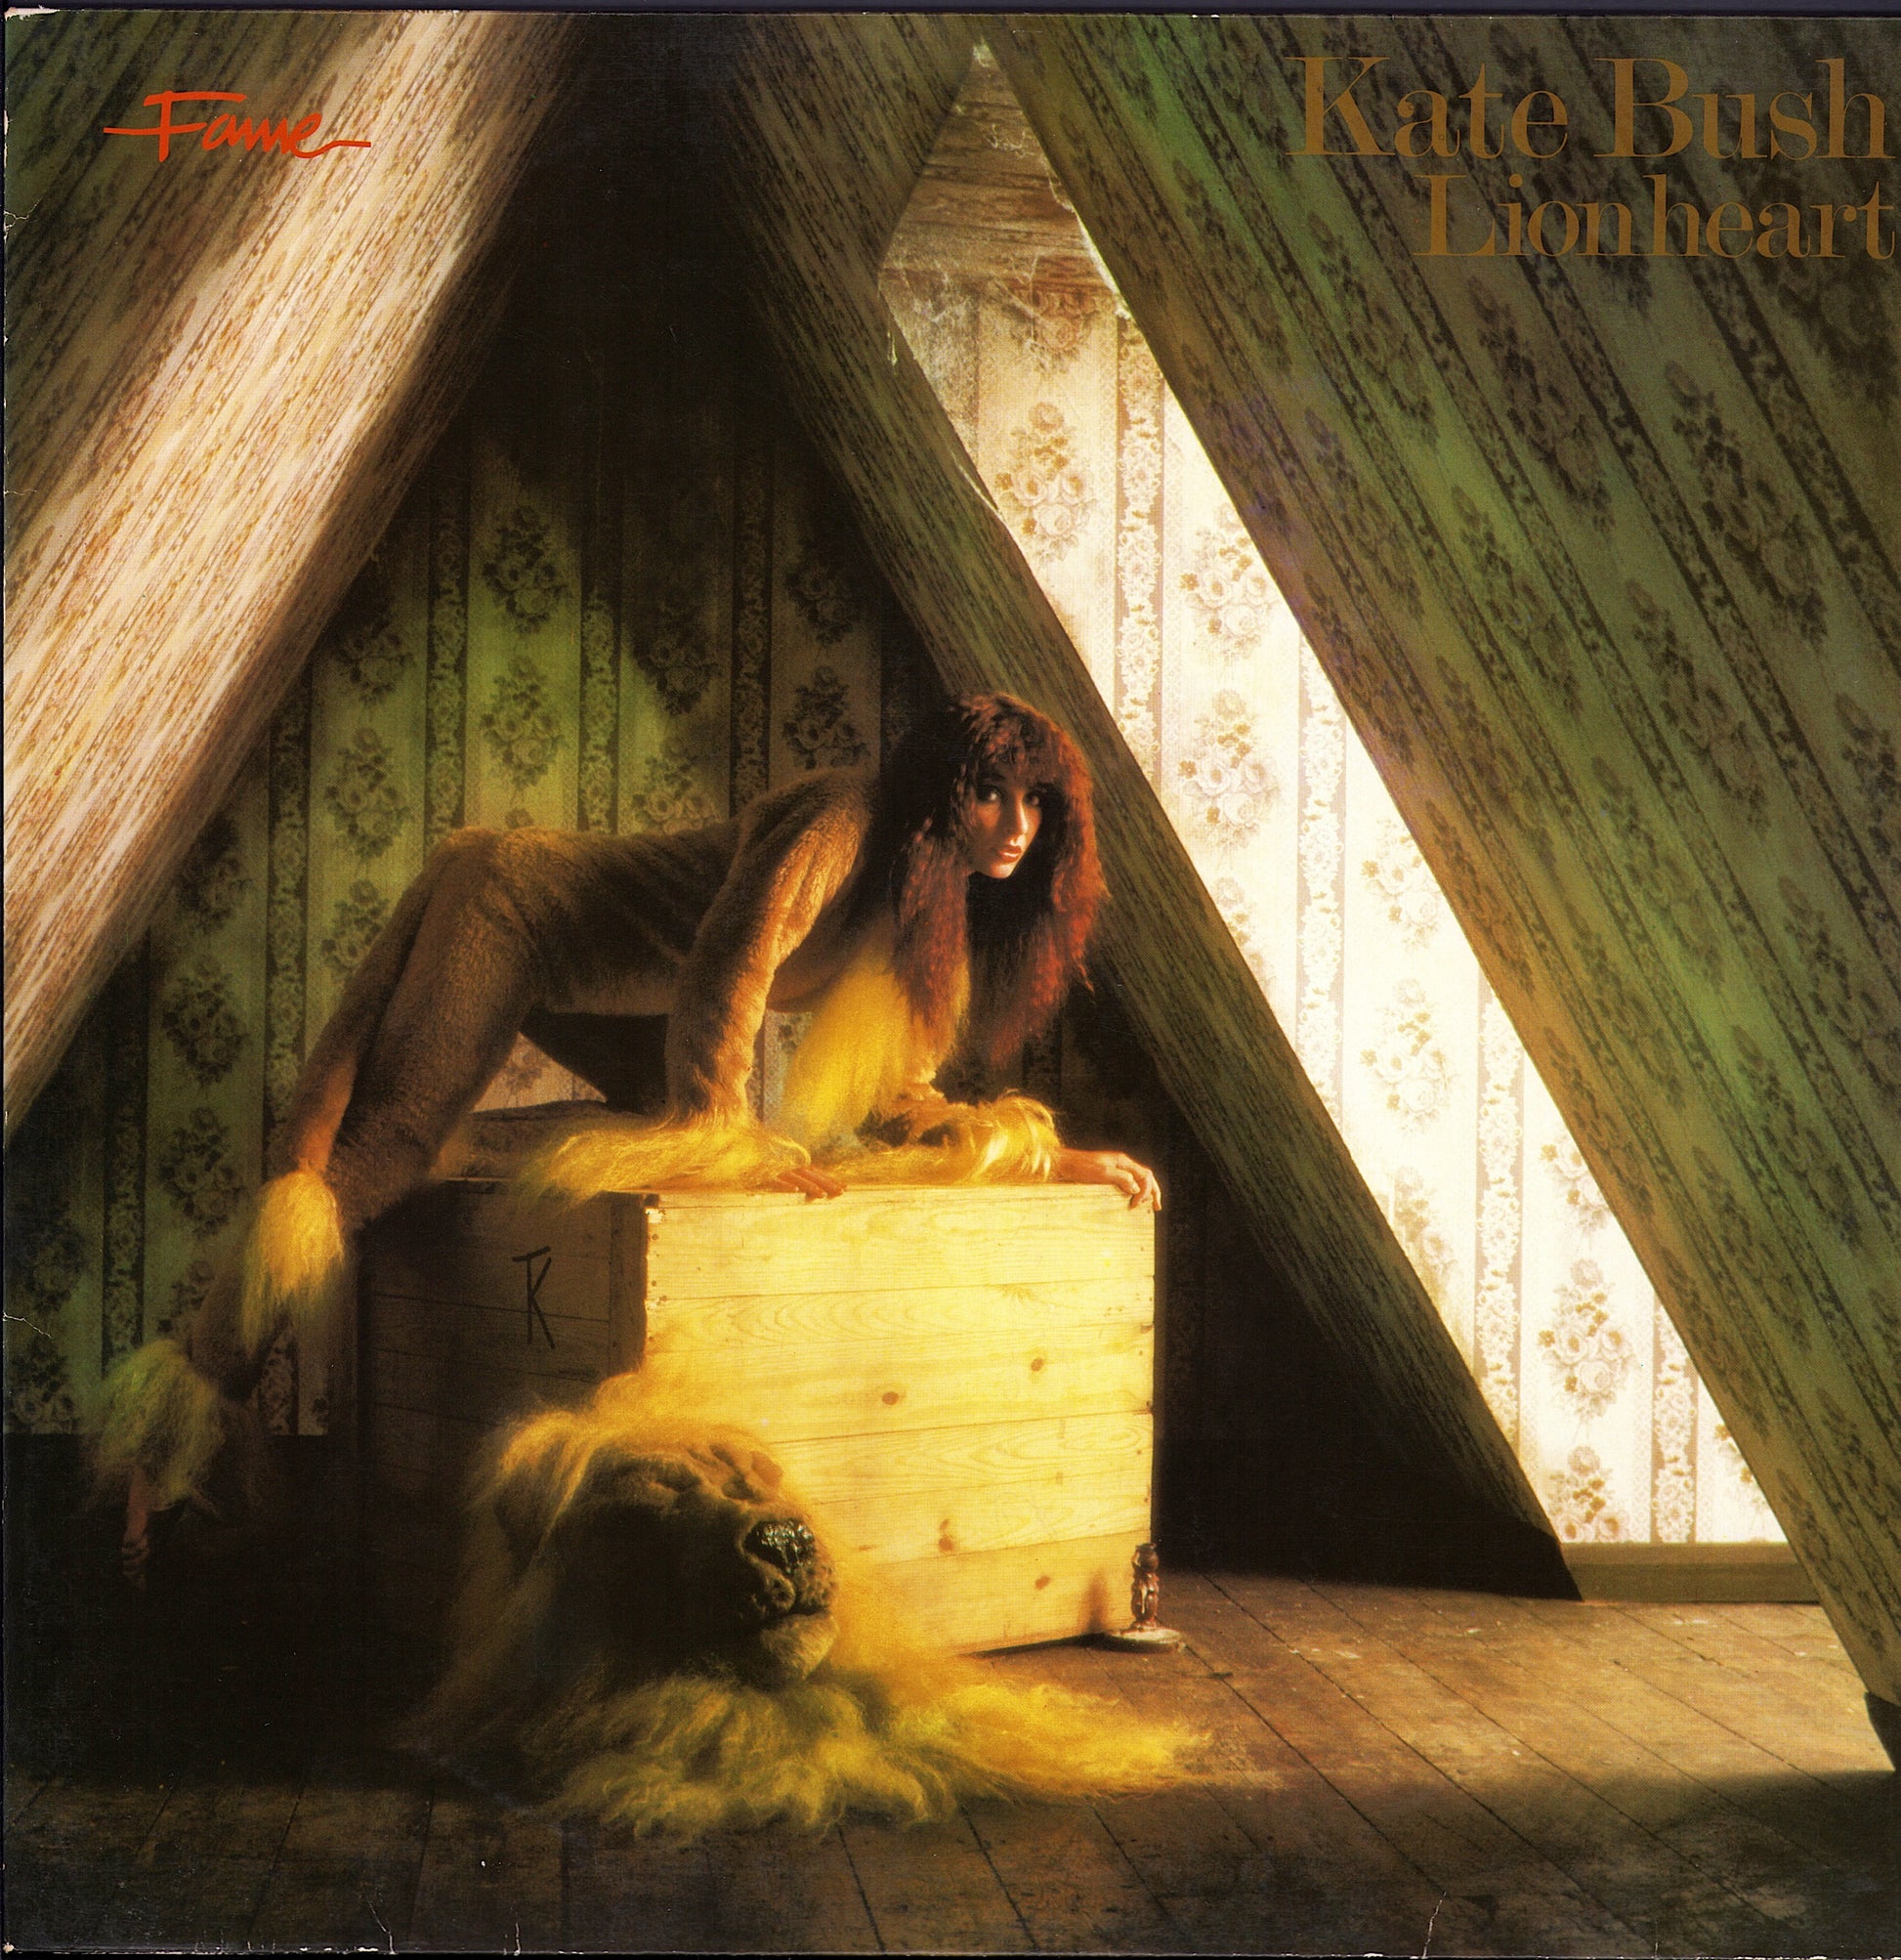 Kate Bush - Lionheart Vinyl LP